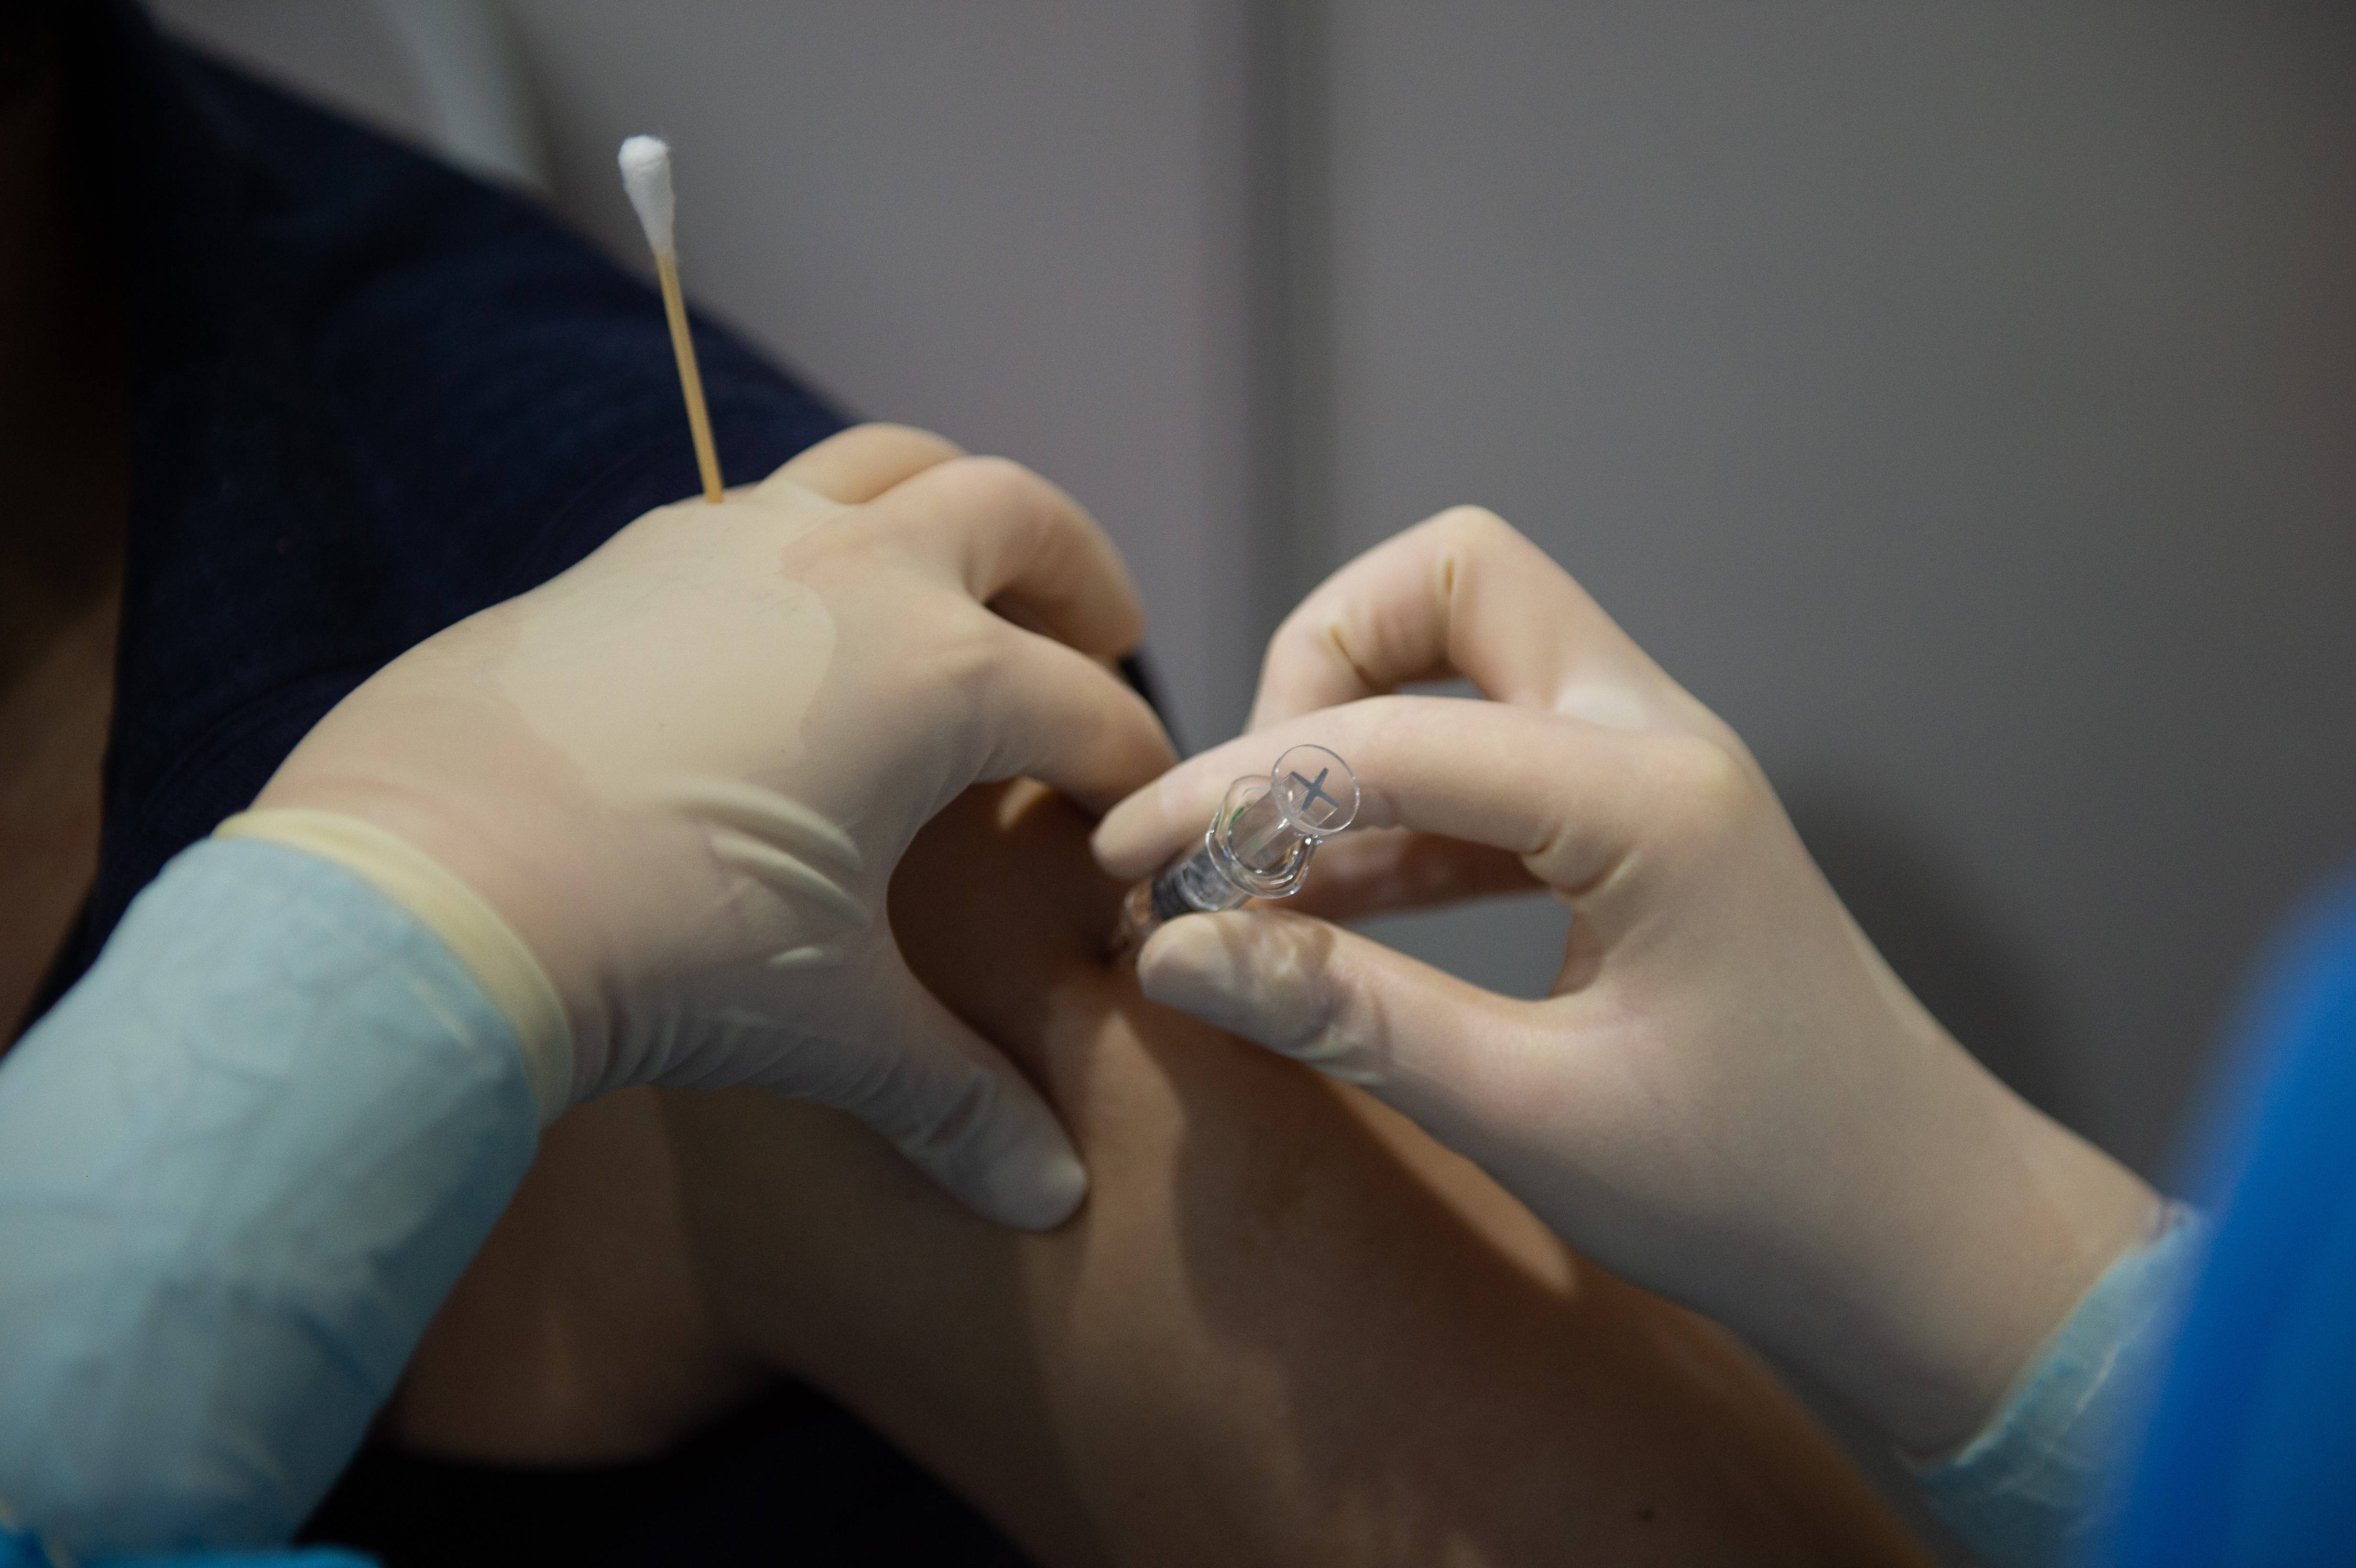 北京市有序开展新冠病毒疫苗接种工作